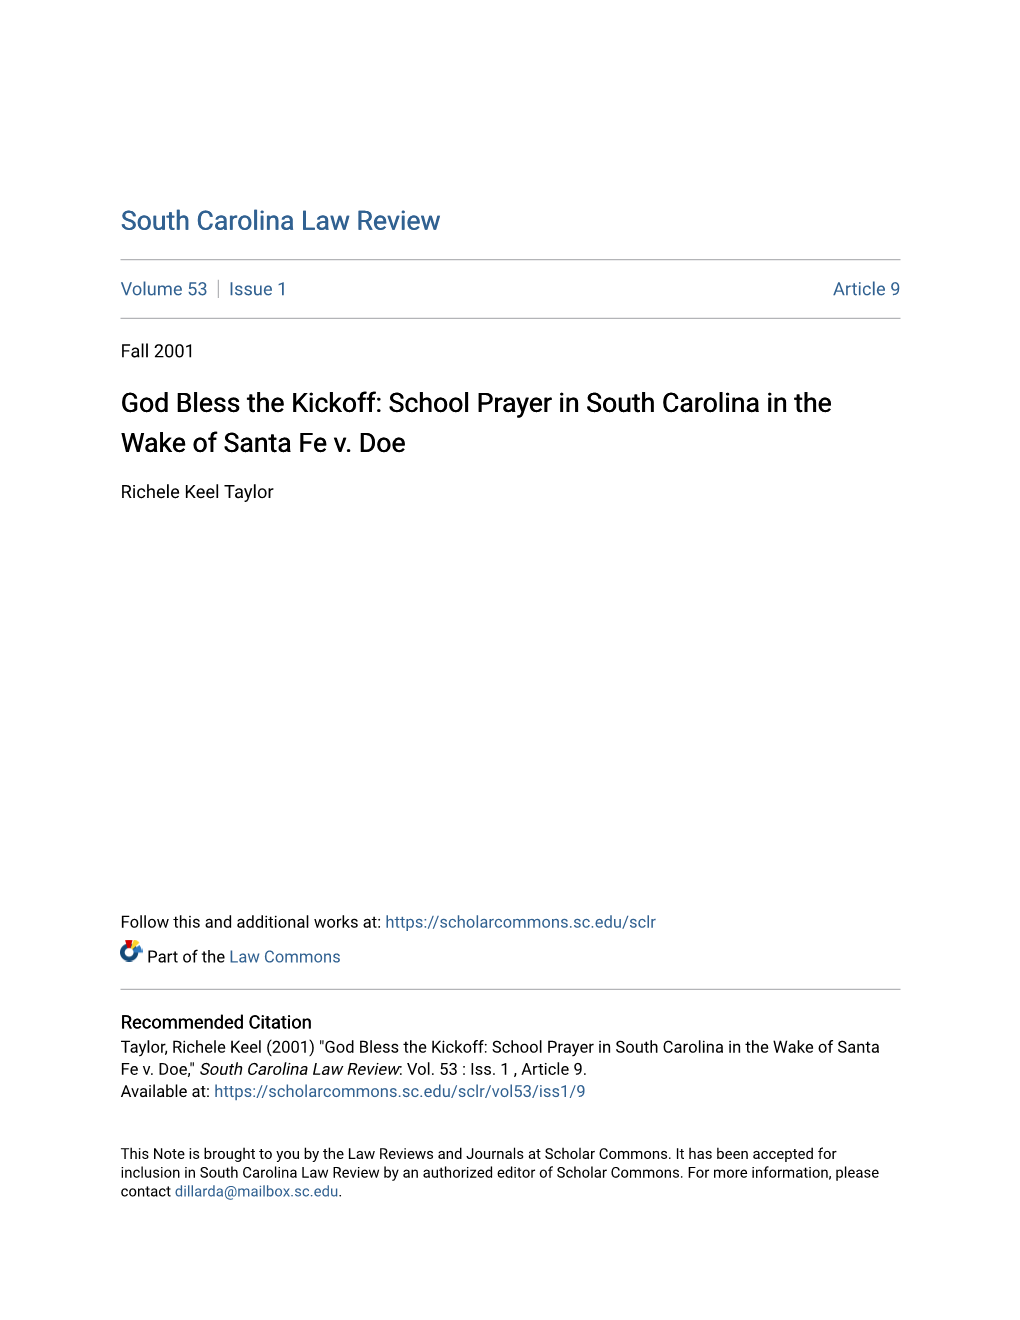 God Bless the Kickoff: School Prayer in South Carolina in the Wake of Santa Fe V